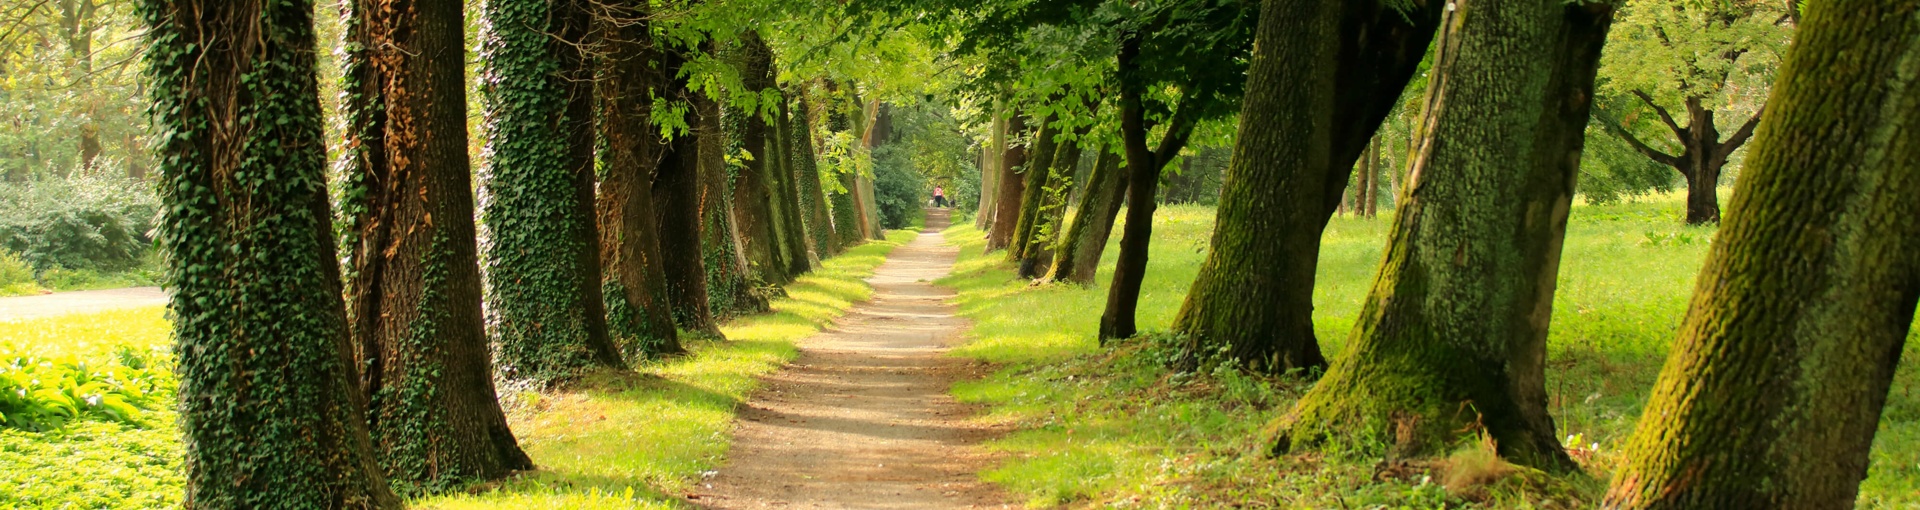 Weg mit grünen Bäumen umrandet - Baumallee im Stadtpark Güstrow